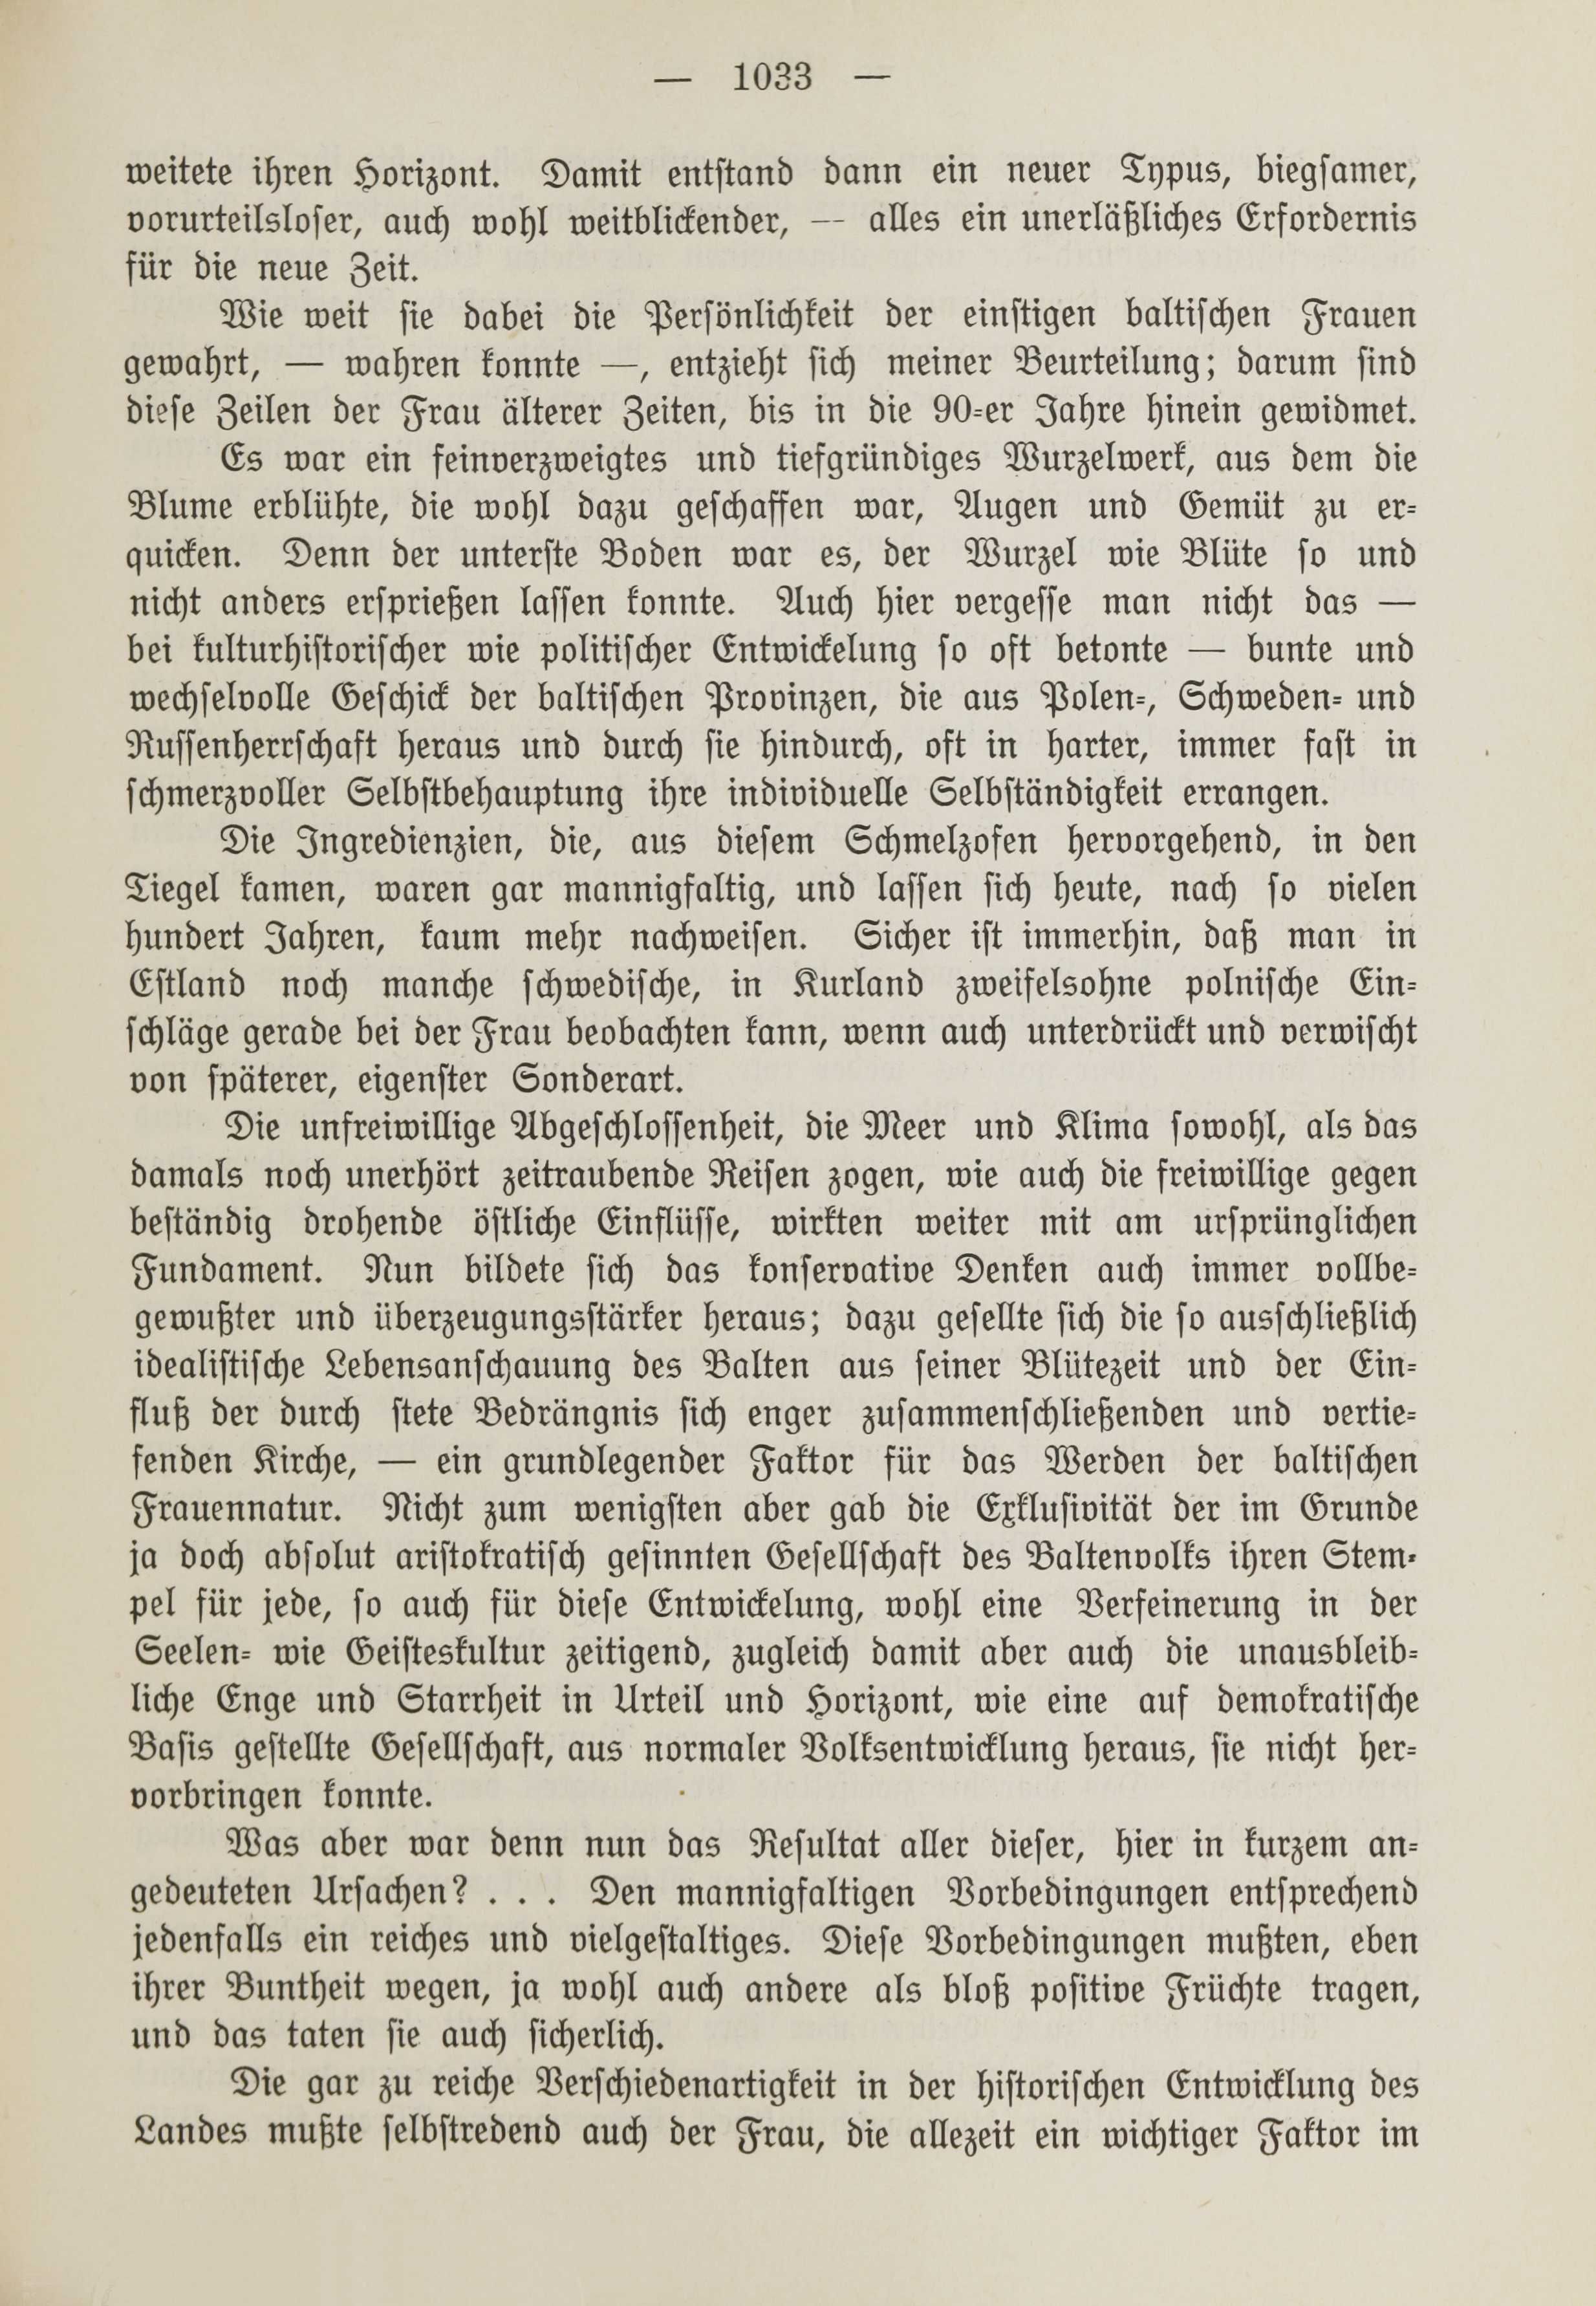 Deutsche Monatsschrift für Russland [1] (1912) | 1041. (1033) Main body of text